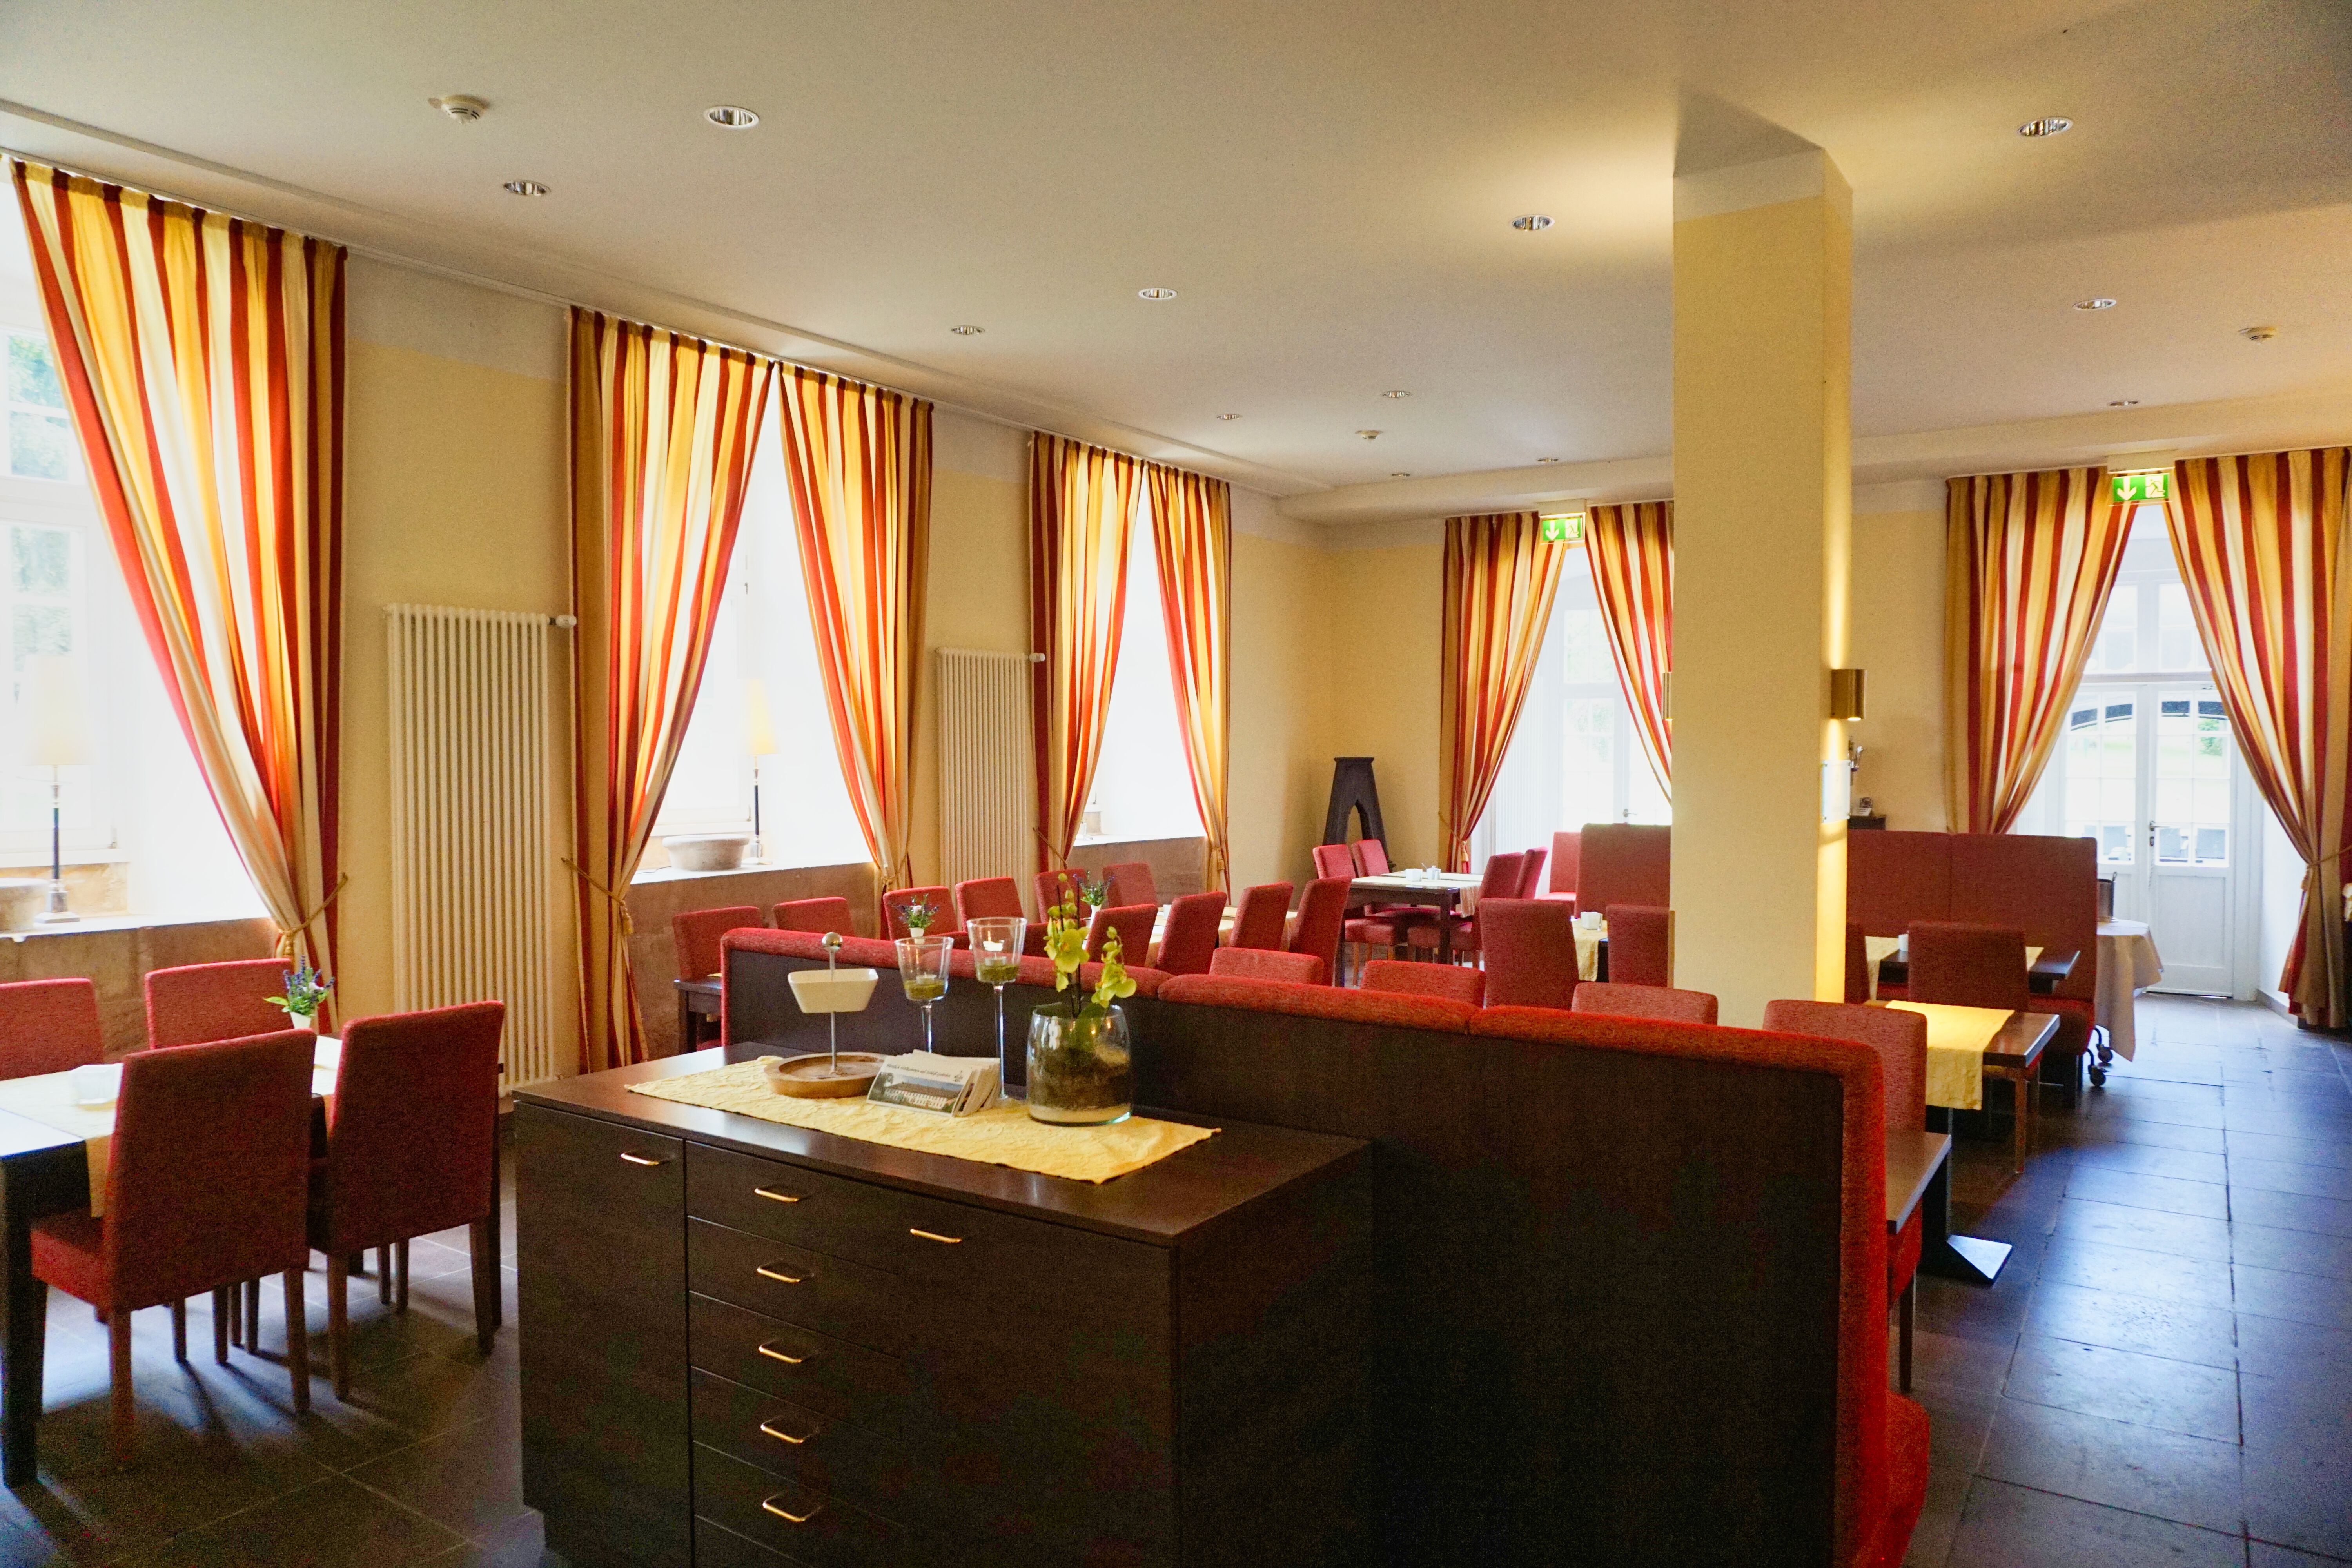 Frühstücksraum im Hotel Schloß Gehrden, Brakel.
